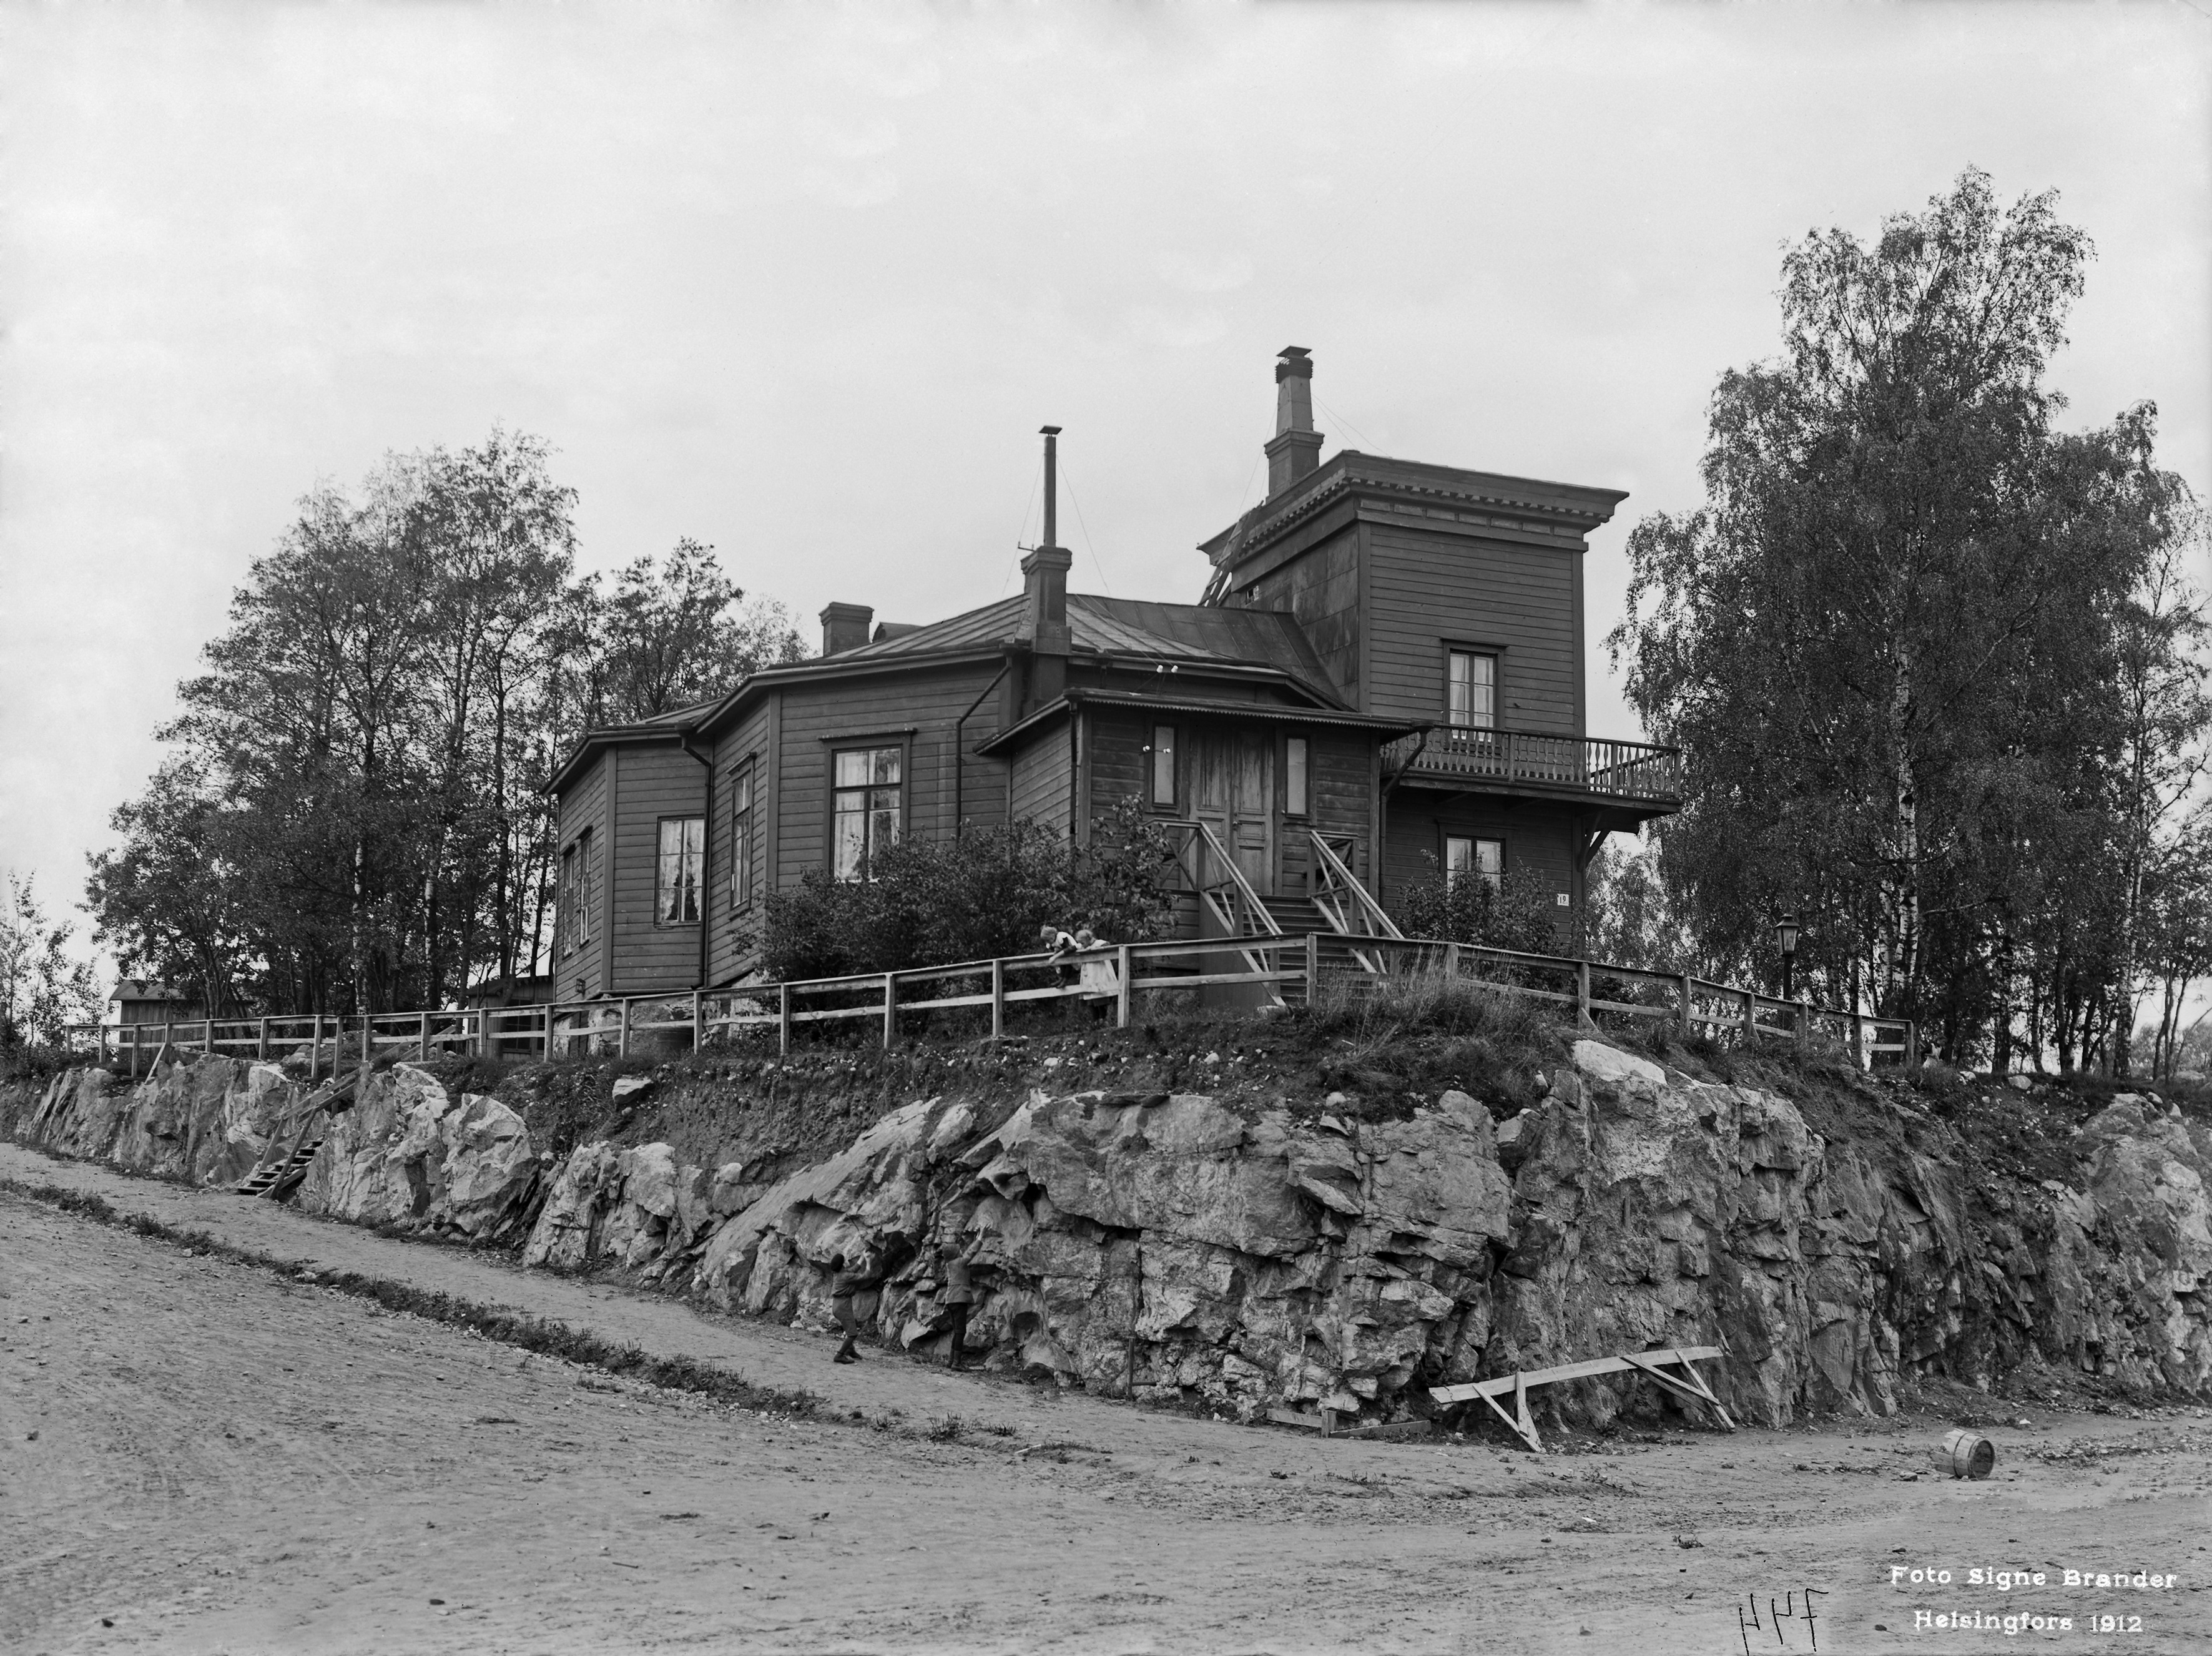 Bergan huvila-alue, Villa Jonasberg.  Nykyinen Töölönkatu 12.  Kuvattu nykyisen Töölönkatu 9:n kohdalta luoteeseen.